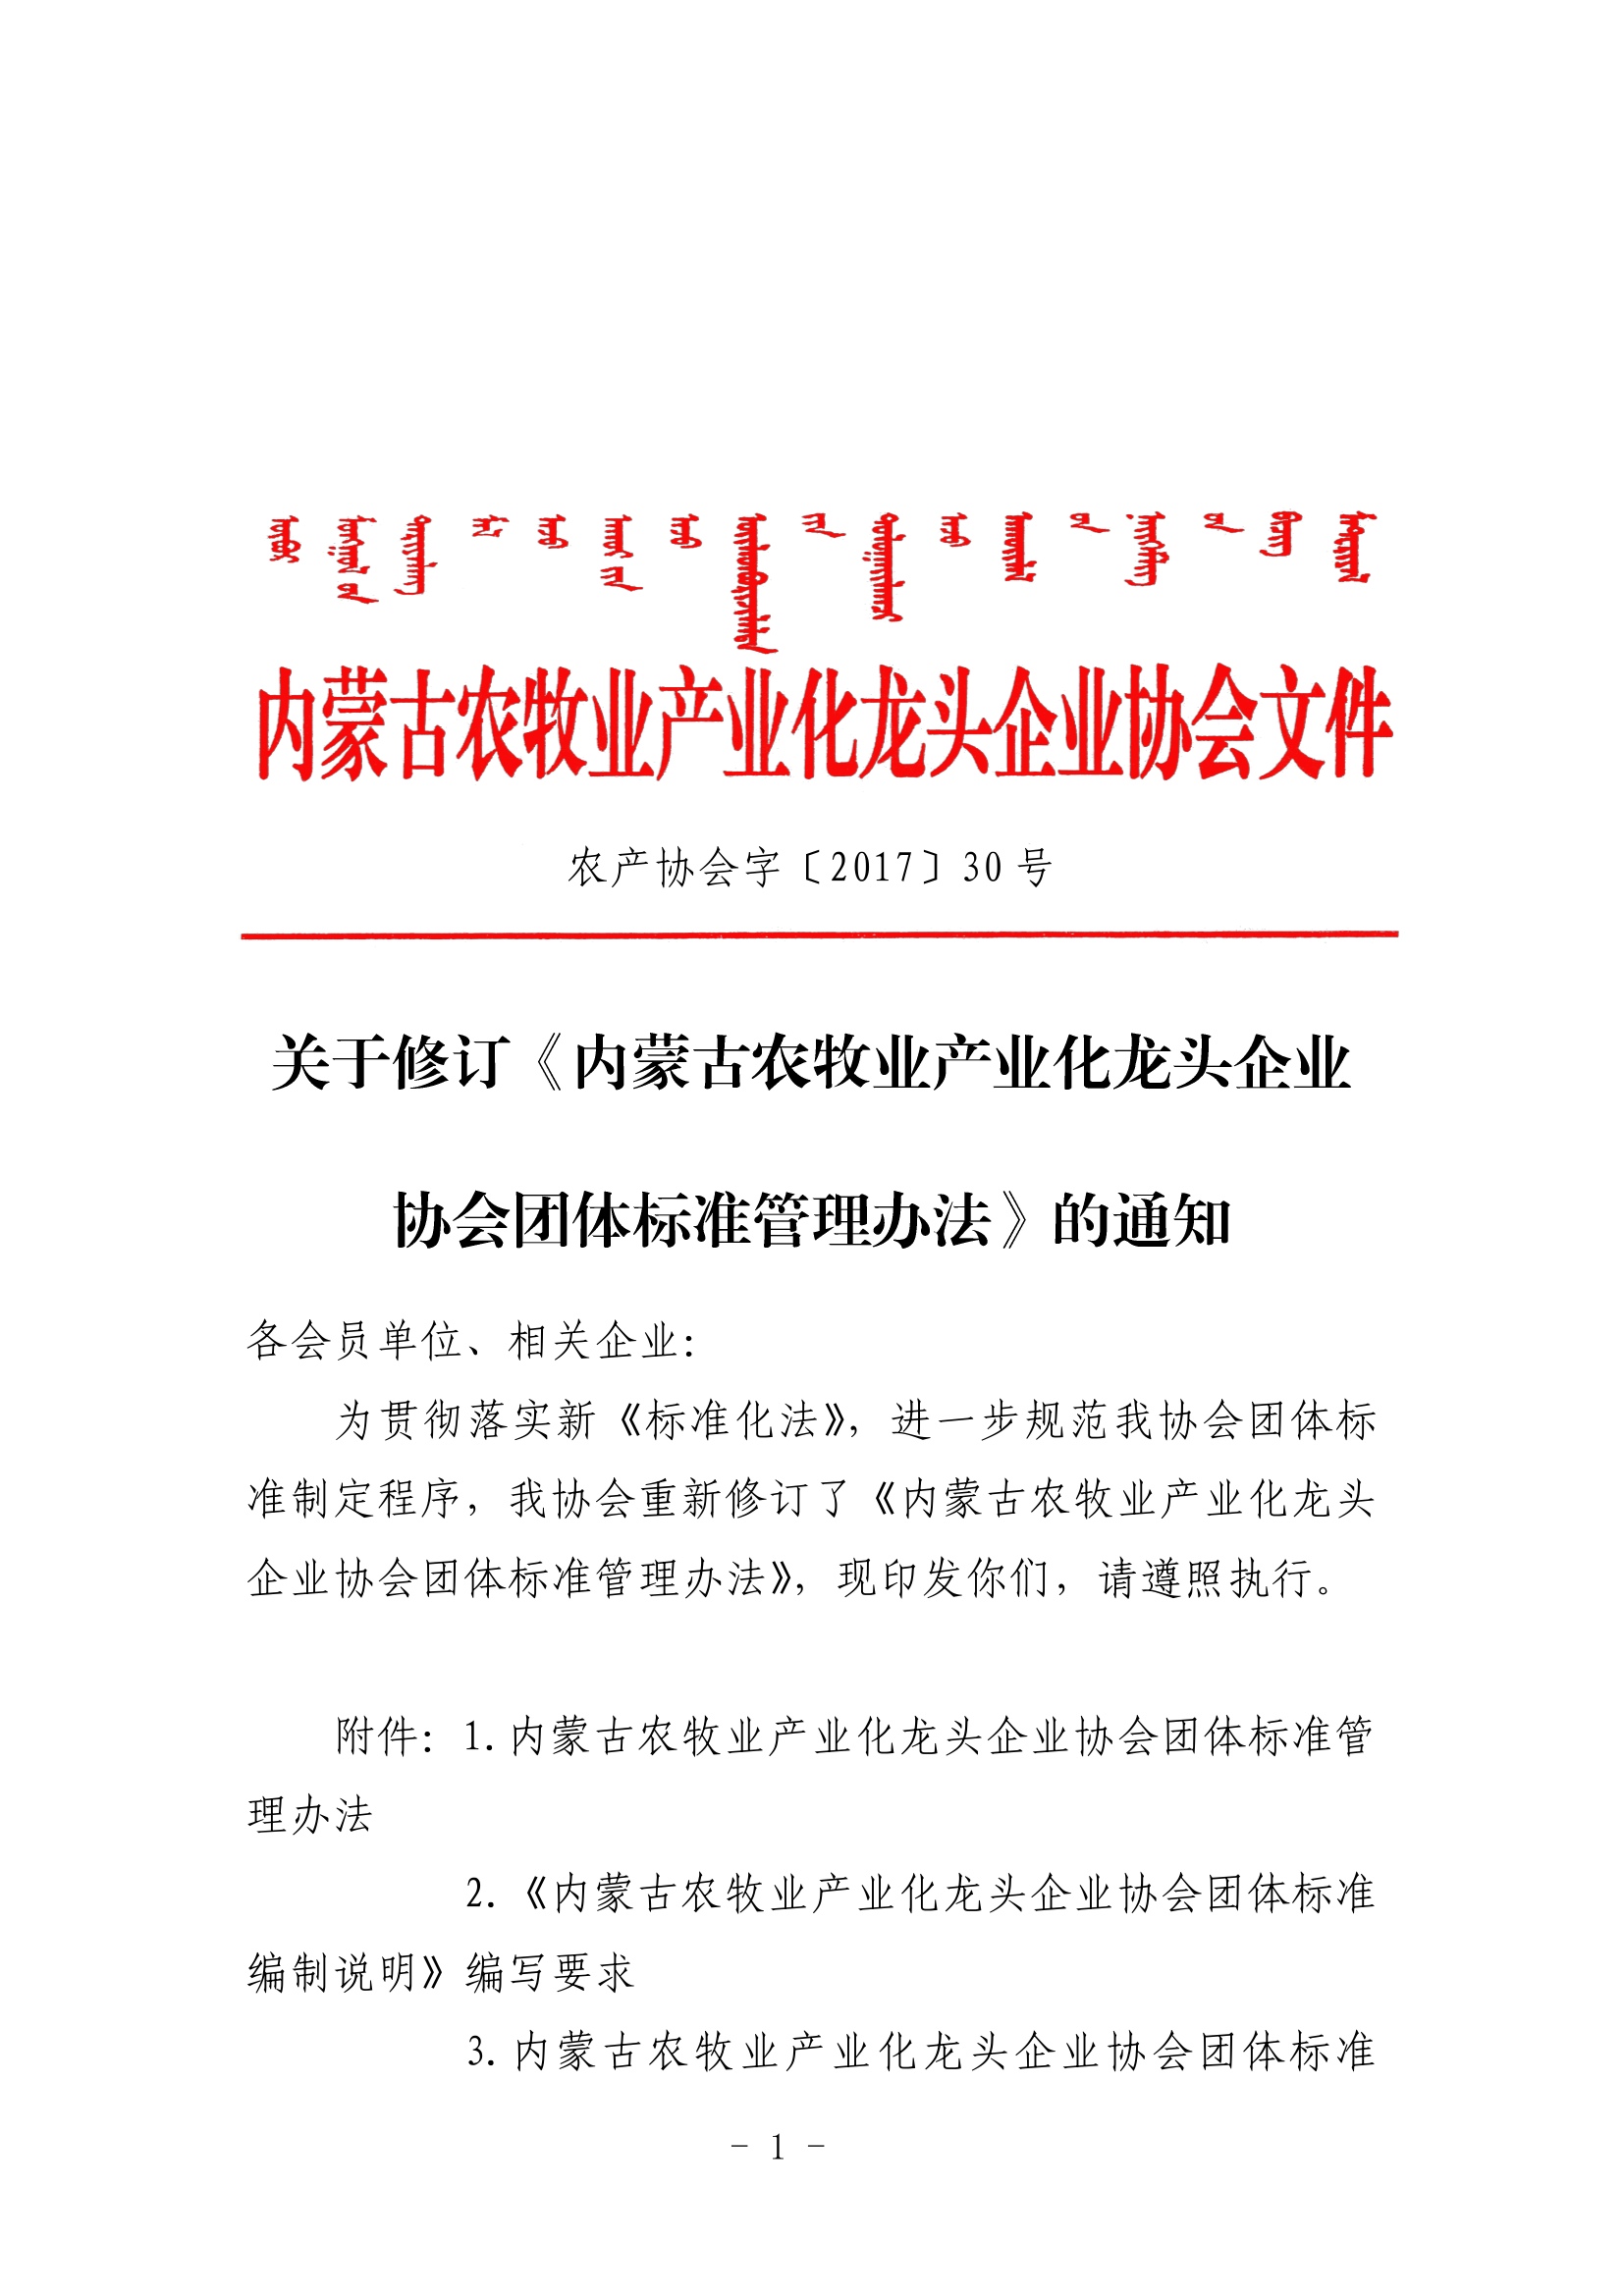 关于修订《乐动体育农牧业产业化龙头企业LDSPORTS官网（中国）科技公司团体标准管理办法》的通知